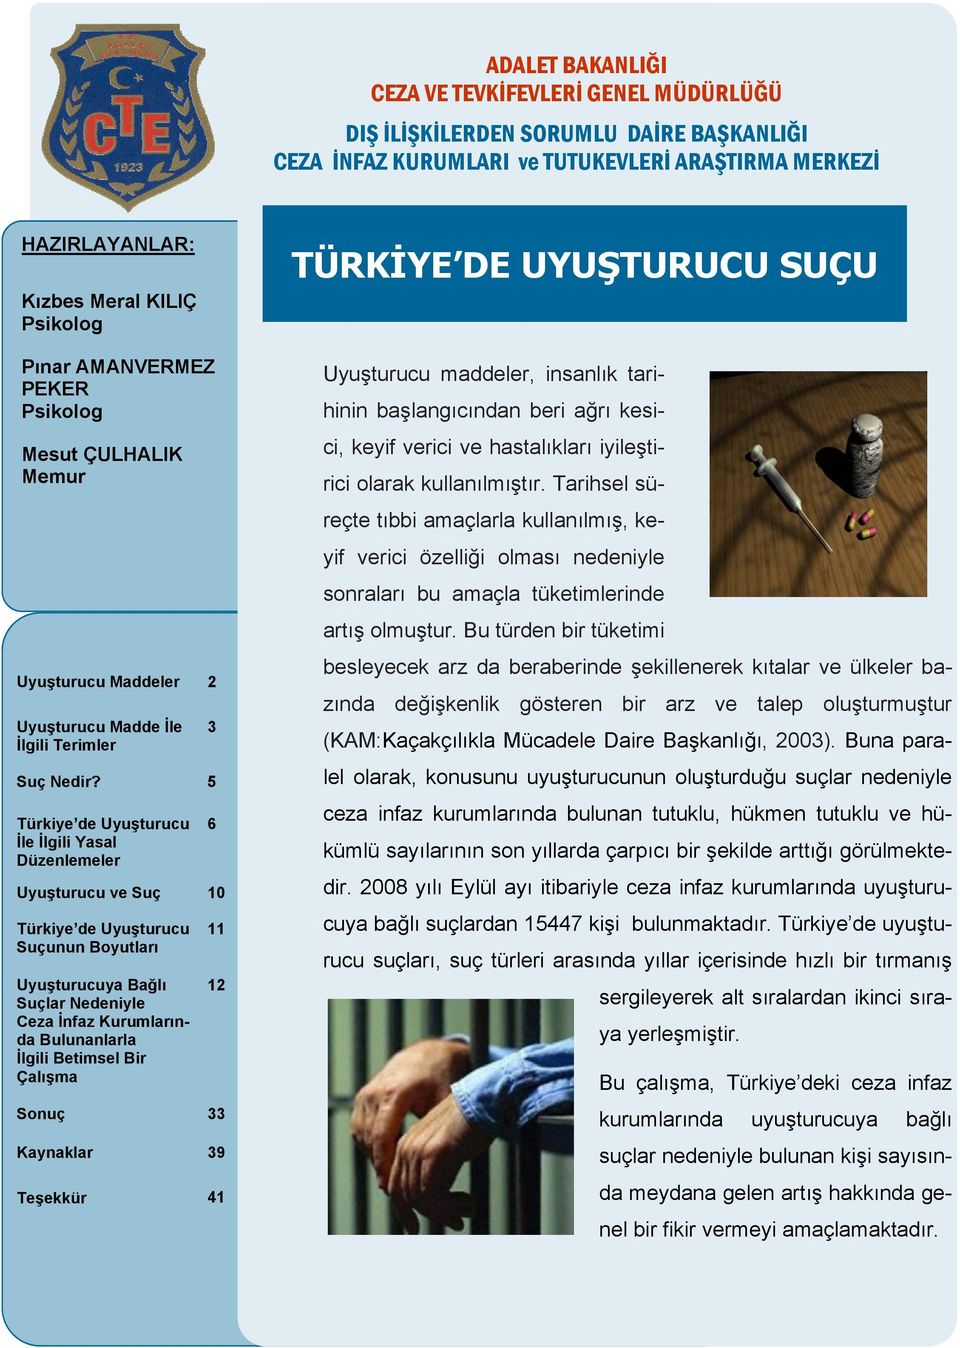 5 Türkiye de Uyuşturucu İle İlgili Yasal Düzenlemeler Uyuşturucu ve Suç 10 Türkiye de Uyuşturucu Suçunun Boyutları Uyuşturucuya Bağlı Suçlar Nedeniyle Ceza İnfaz Kurumlarında Bulunanlarla İlgili